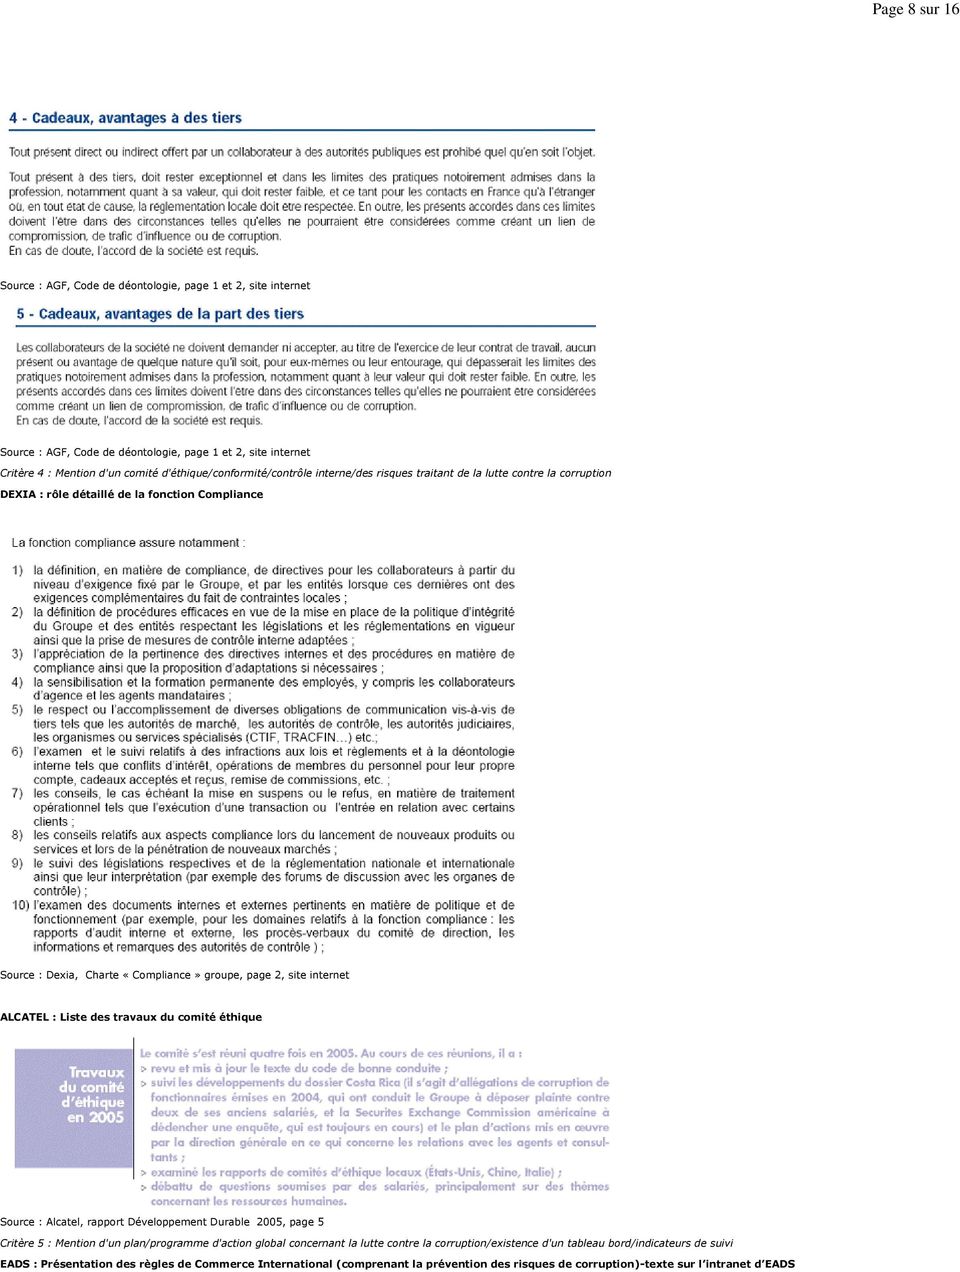 site internet ALCATEL : Liste des travaux du comité éthique Source : Alcatel, rapport Développement Durable 2005, page 5 Critère 5 : Mention d'un plan/programme d'action global concernant la